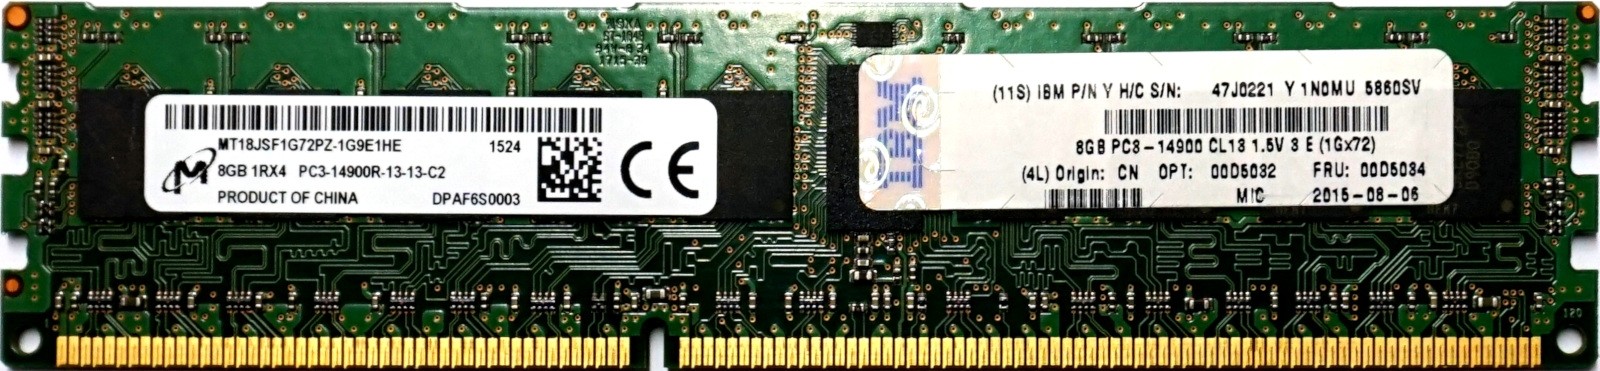 IBM (47J0221) - 8GB PC3-14900R (DDR3-1866Mhz, 1RX4)